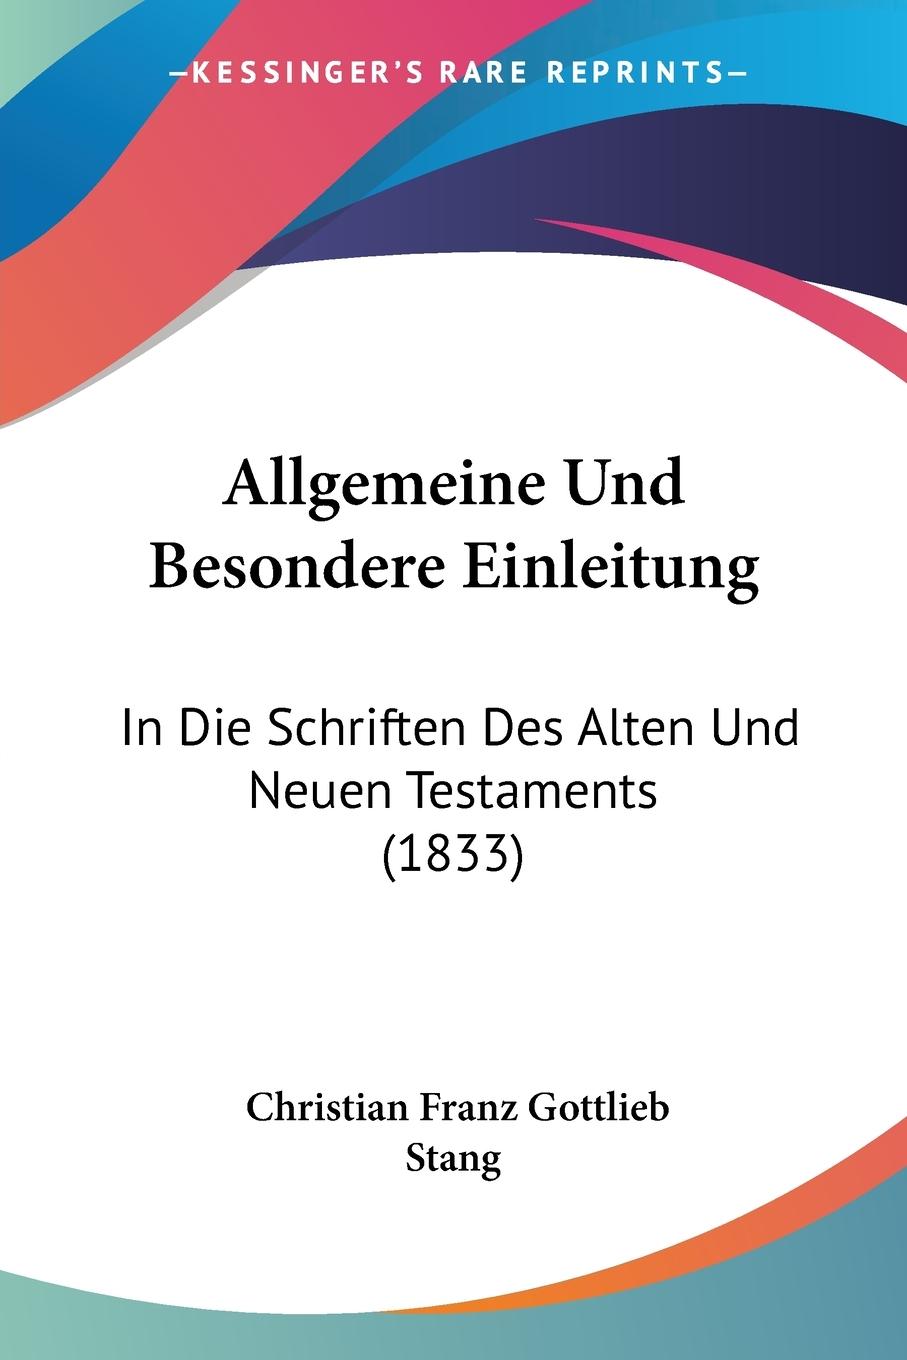 Allgemeine Und Besondere Einleitung - Stang, Christian Franz Gottlieb